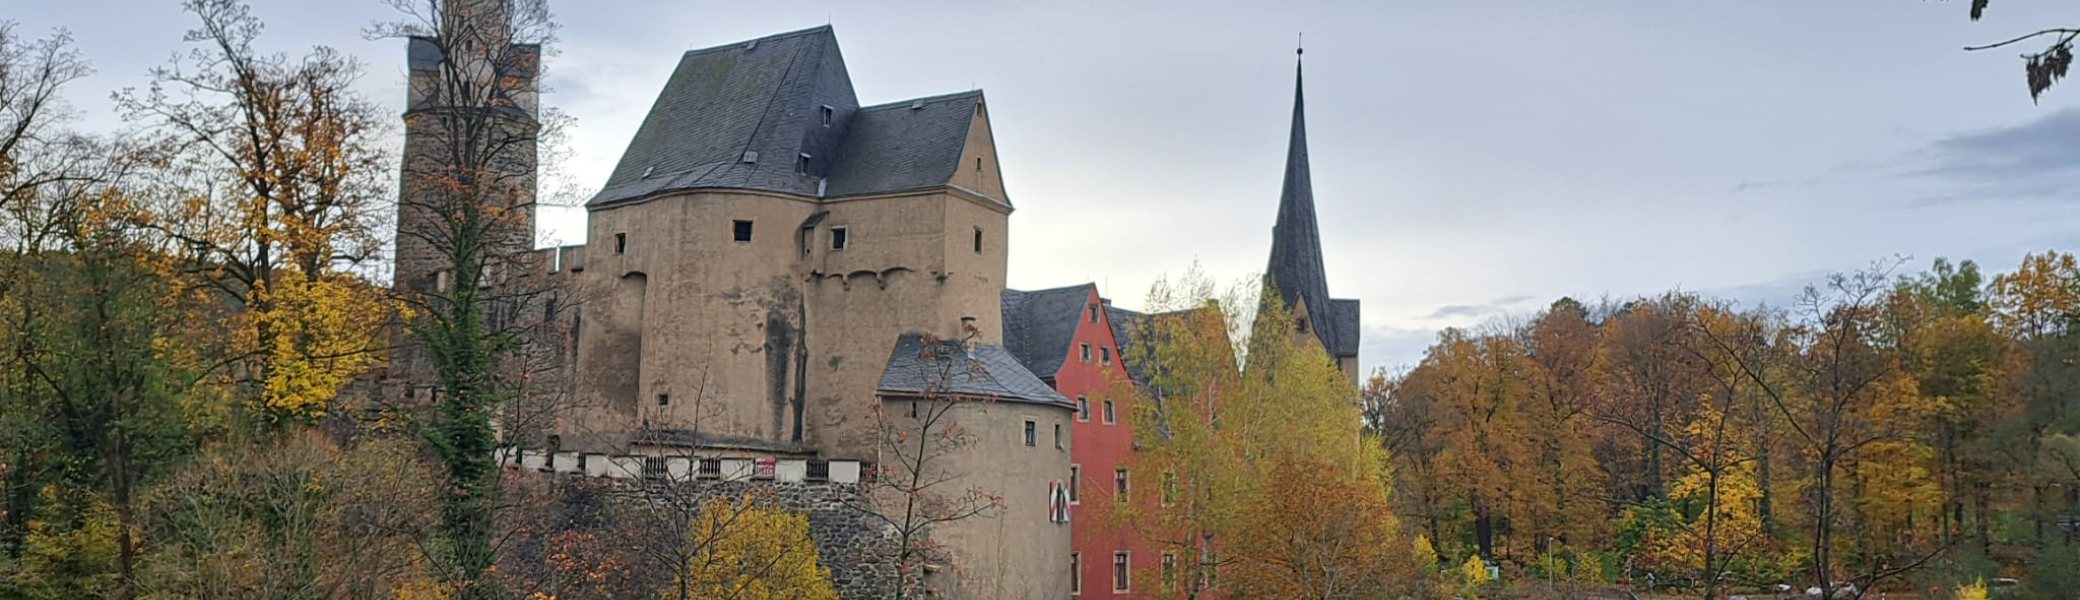 Burg Stein | © K. Drechsel